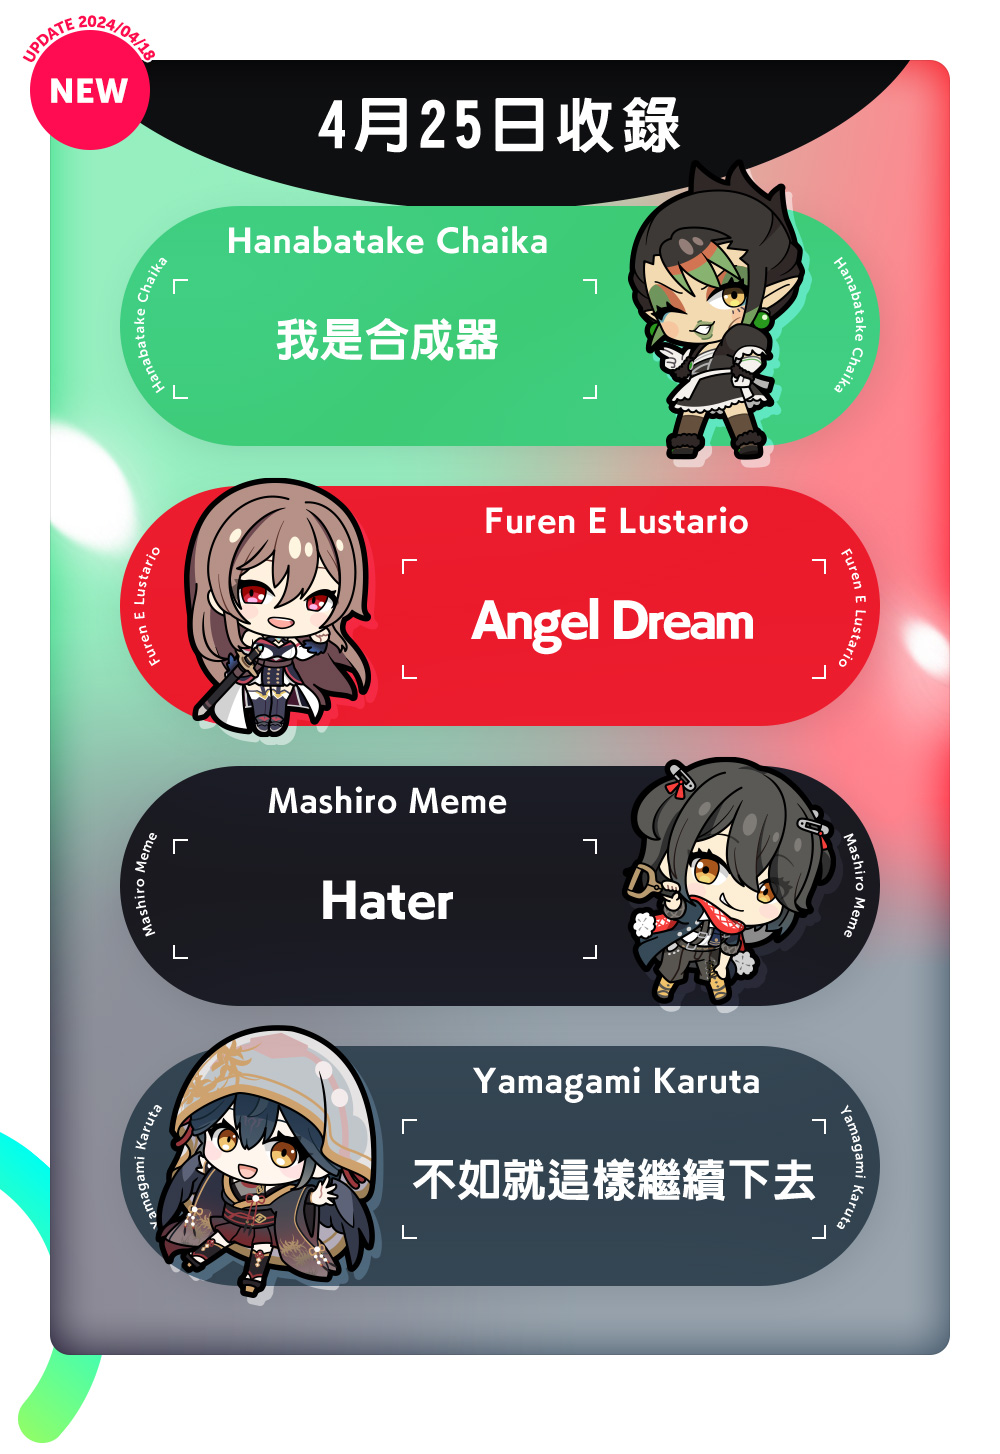 4月25日收錄　Hanabatake Chaika 「我是合成器」　Furen E Lustario 「Angel Dream」　Mashiro Meme「Hater」　Lize Helesta 「Marionette Pure」　Yamagami Karuta「不如就這樣繼續下去」